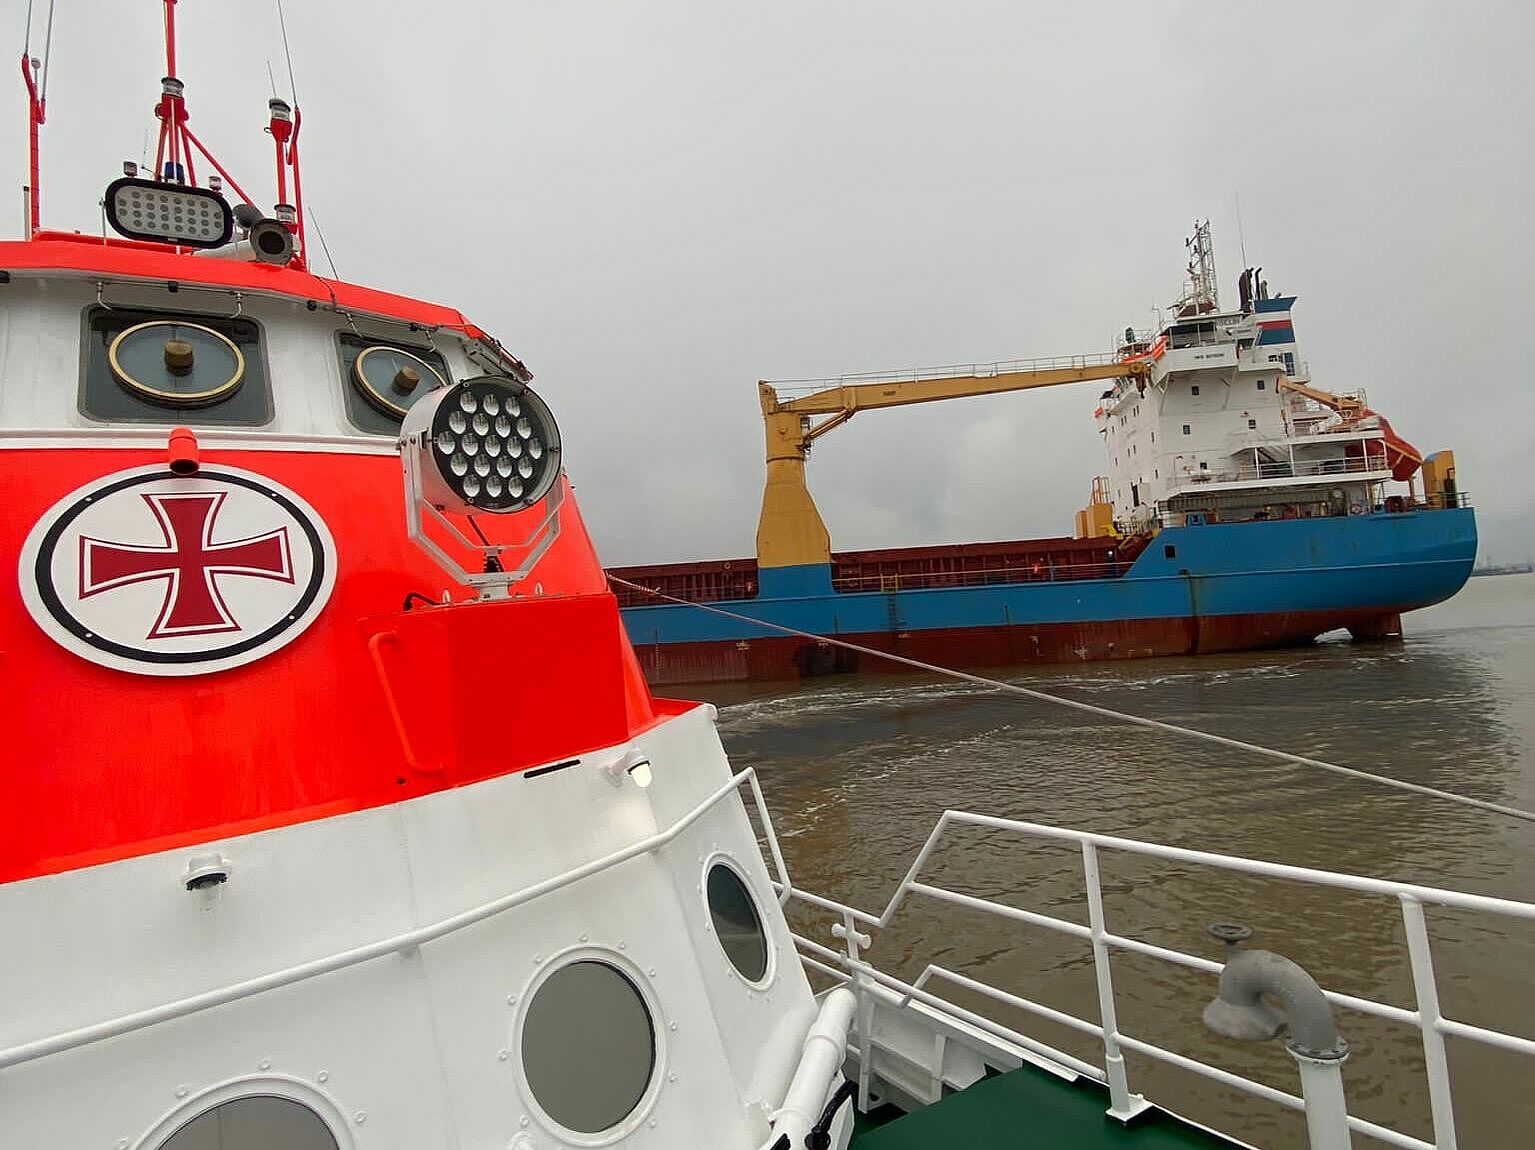 Seenotrettungskreuzer der DGzRS im Vordergrund, Frachtschiff im Hintergrund